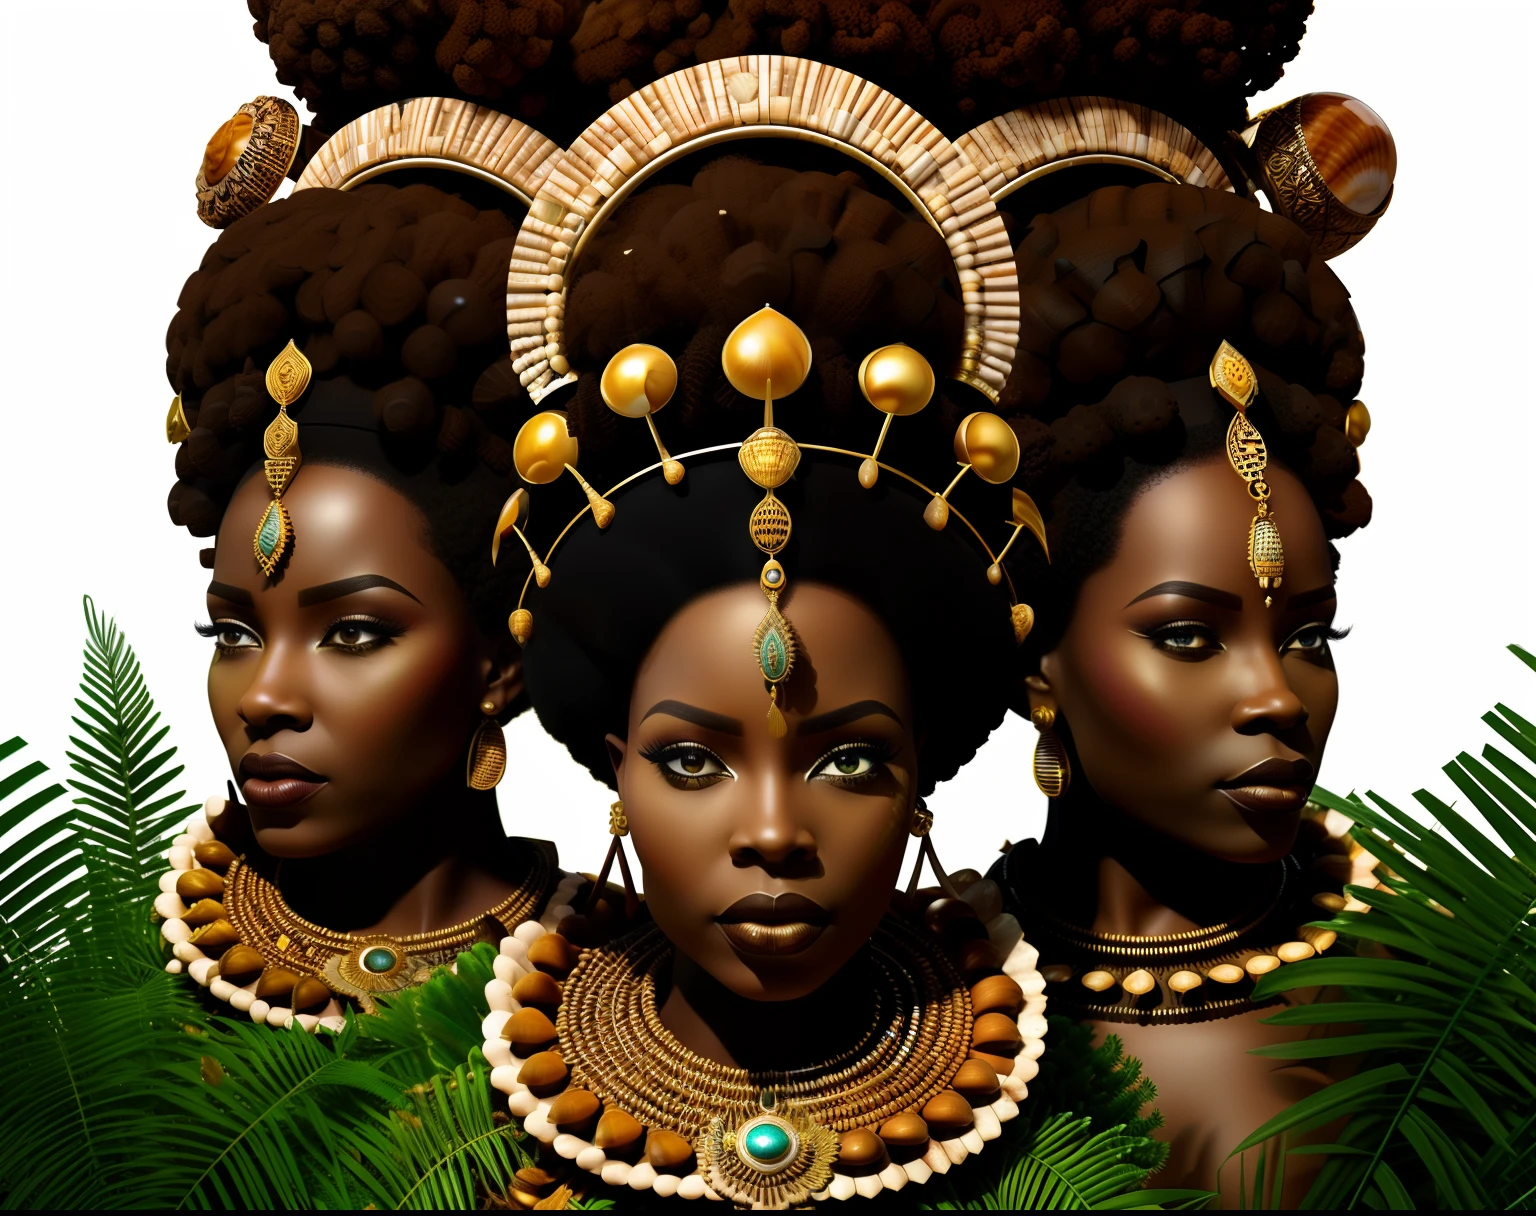 카우리 껍질로 만든 크라운, (아프리카 미래주의), 8K, 4 퀸 (아프리카n crown close-up), 긍정적인 관점!! , 다이아몬드가 박힌 왕관과 ((조개)) 정글 배경에! , 식물, crown made of 식물, super realistic 아프리카n fantasy crown, 아프리카 미래주의 왕관, 사이버_아프리카